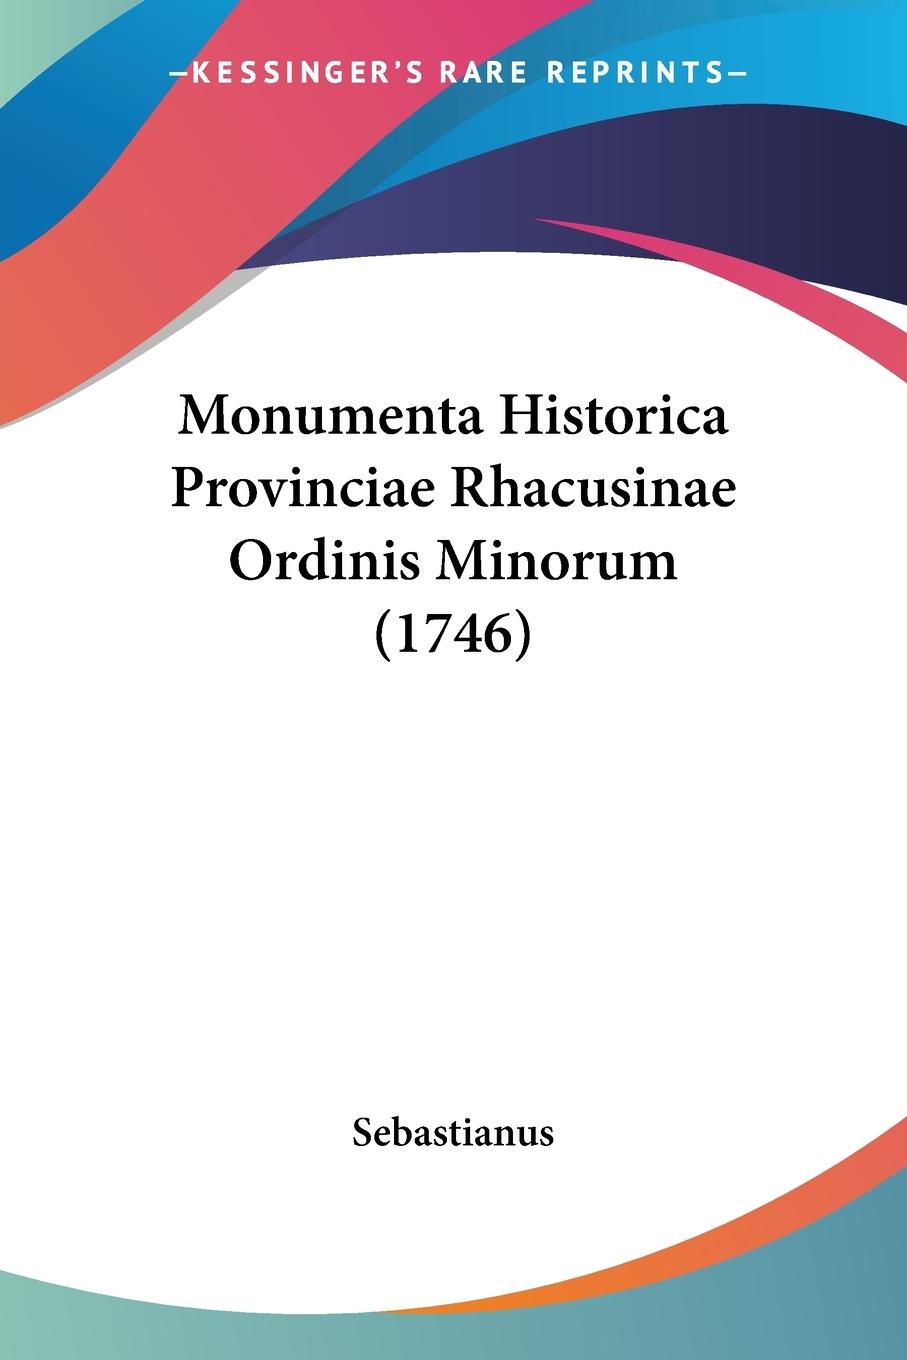 Monumenta Historica Provinciae Rhacusinae Ordinis Minorum (1746) - Sebastianus